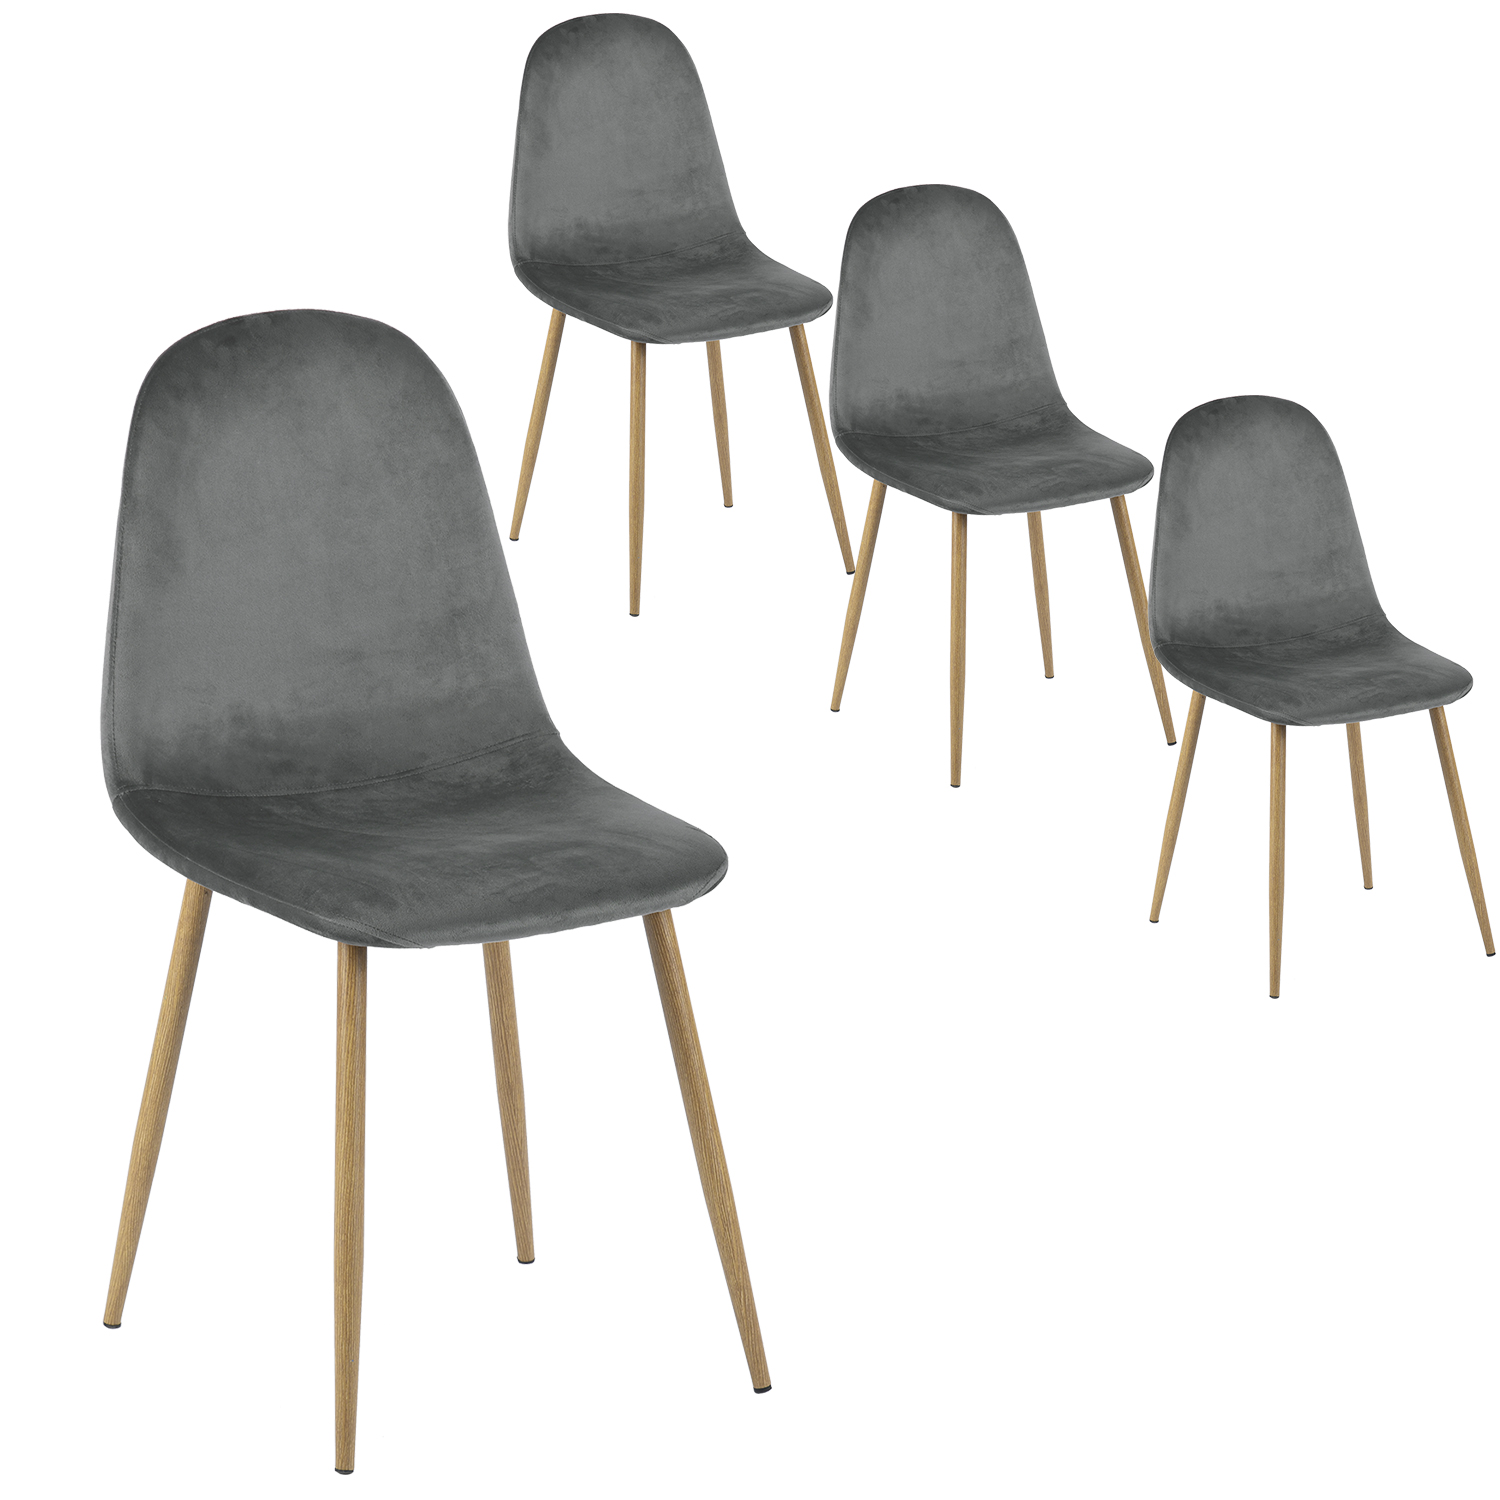 Chaises scandinaves dépareillées ajourées pieds en bois x4 - MANDY